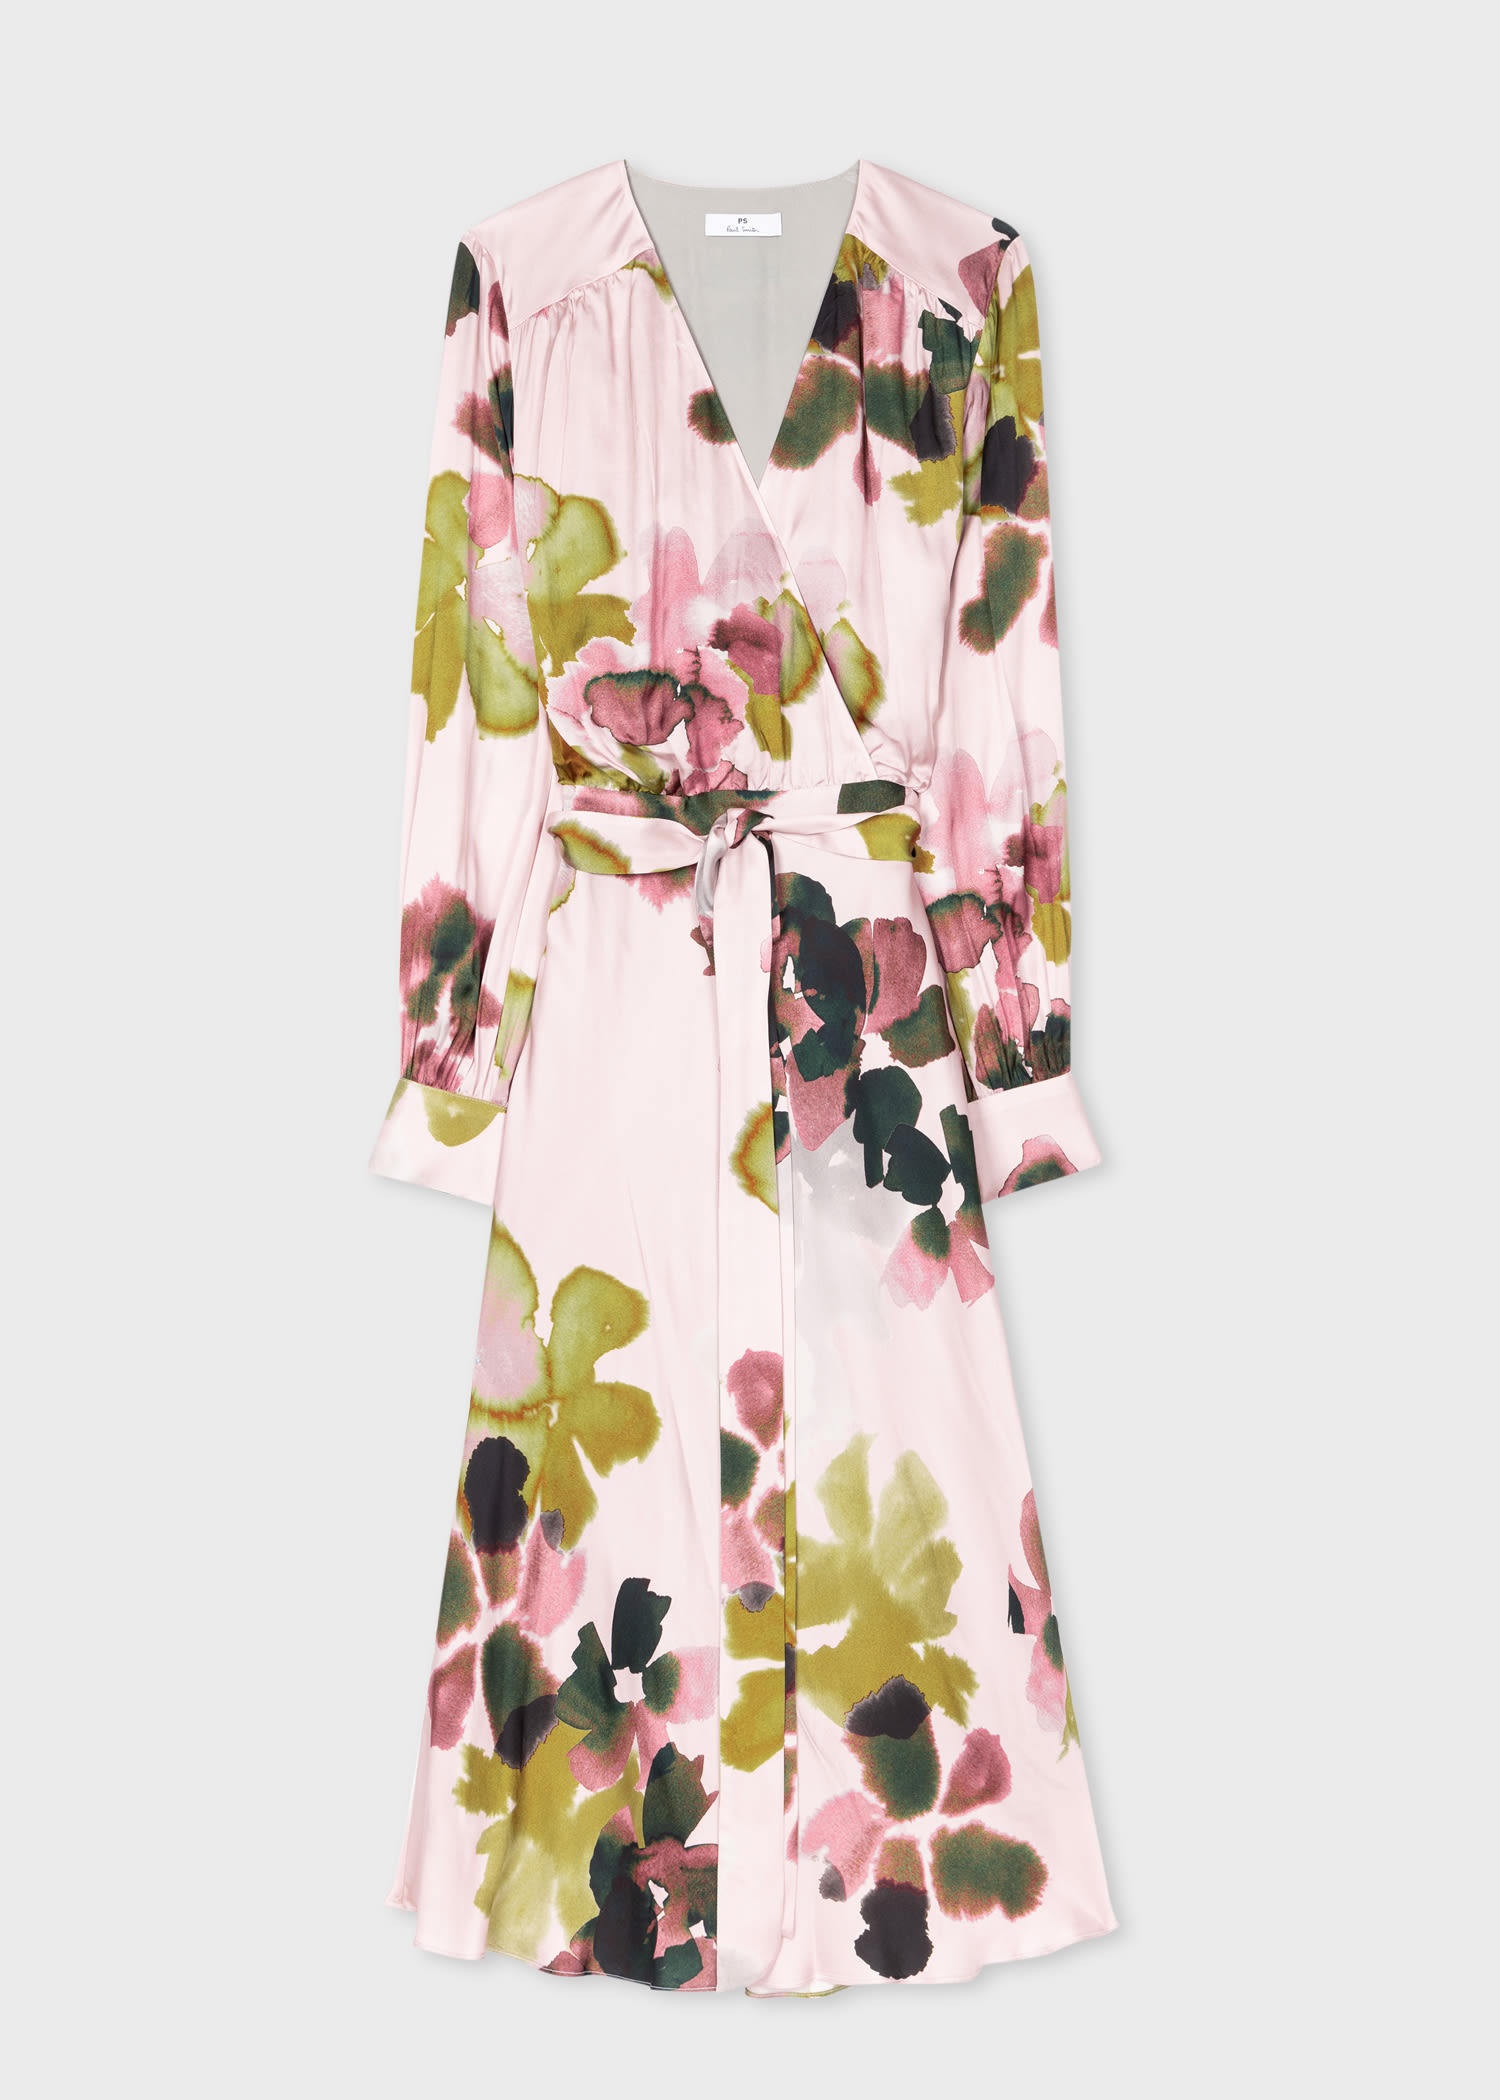 'Floral Watercolour' Print Dress. - 1